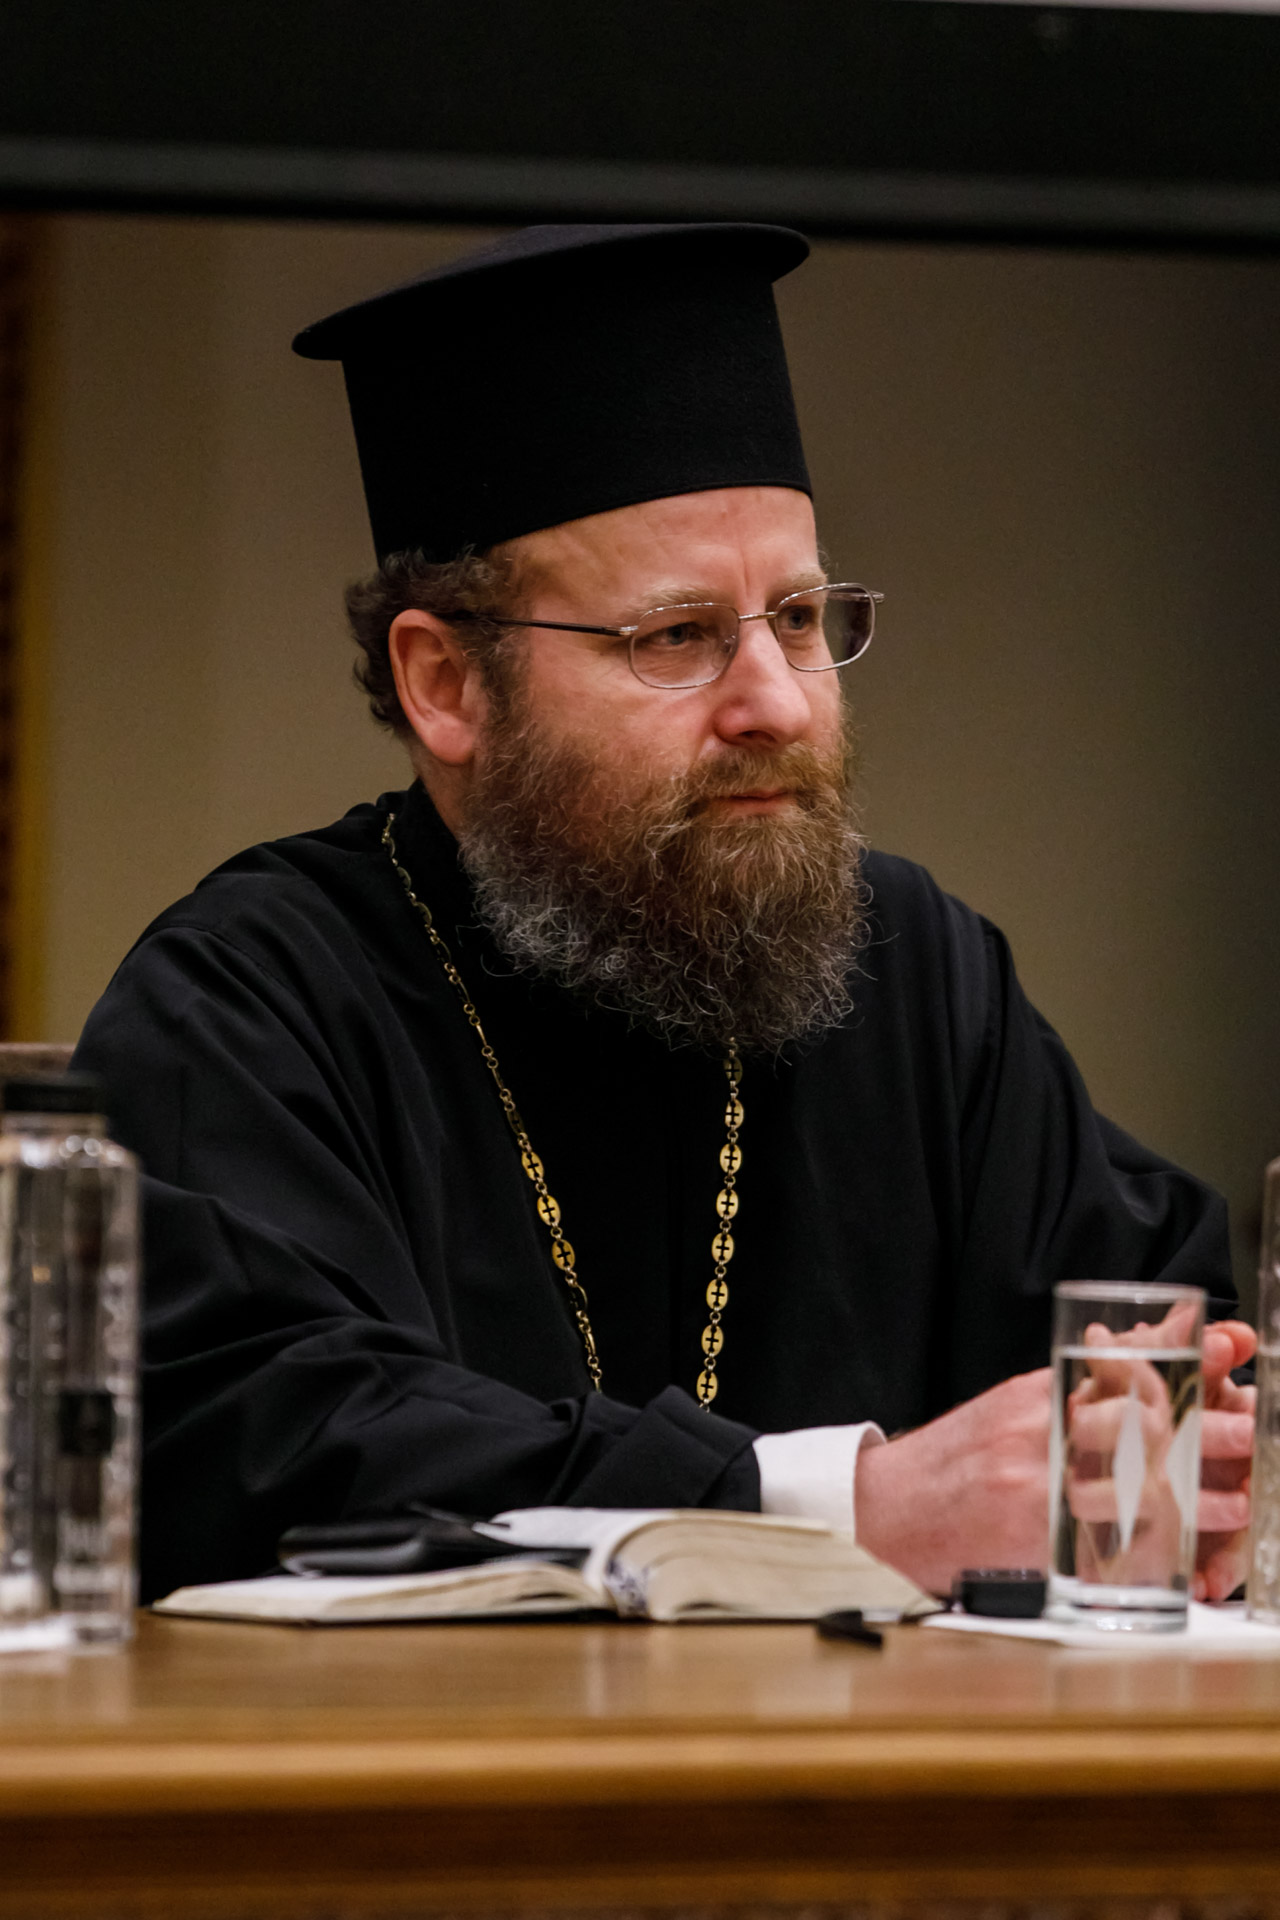 Preasfințitul Sofian Brașoveanul, Episcop vicar al Arhiepiscopiei Ortodoxe Române a Germaniei, Austriei și Luxemburgului